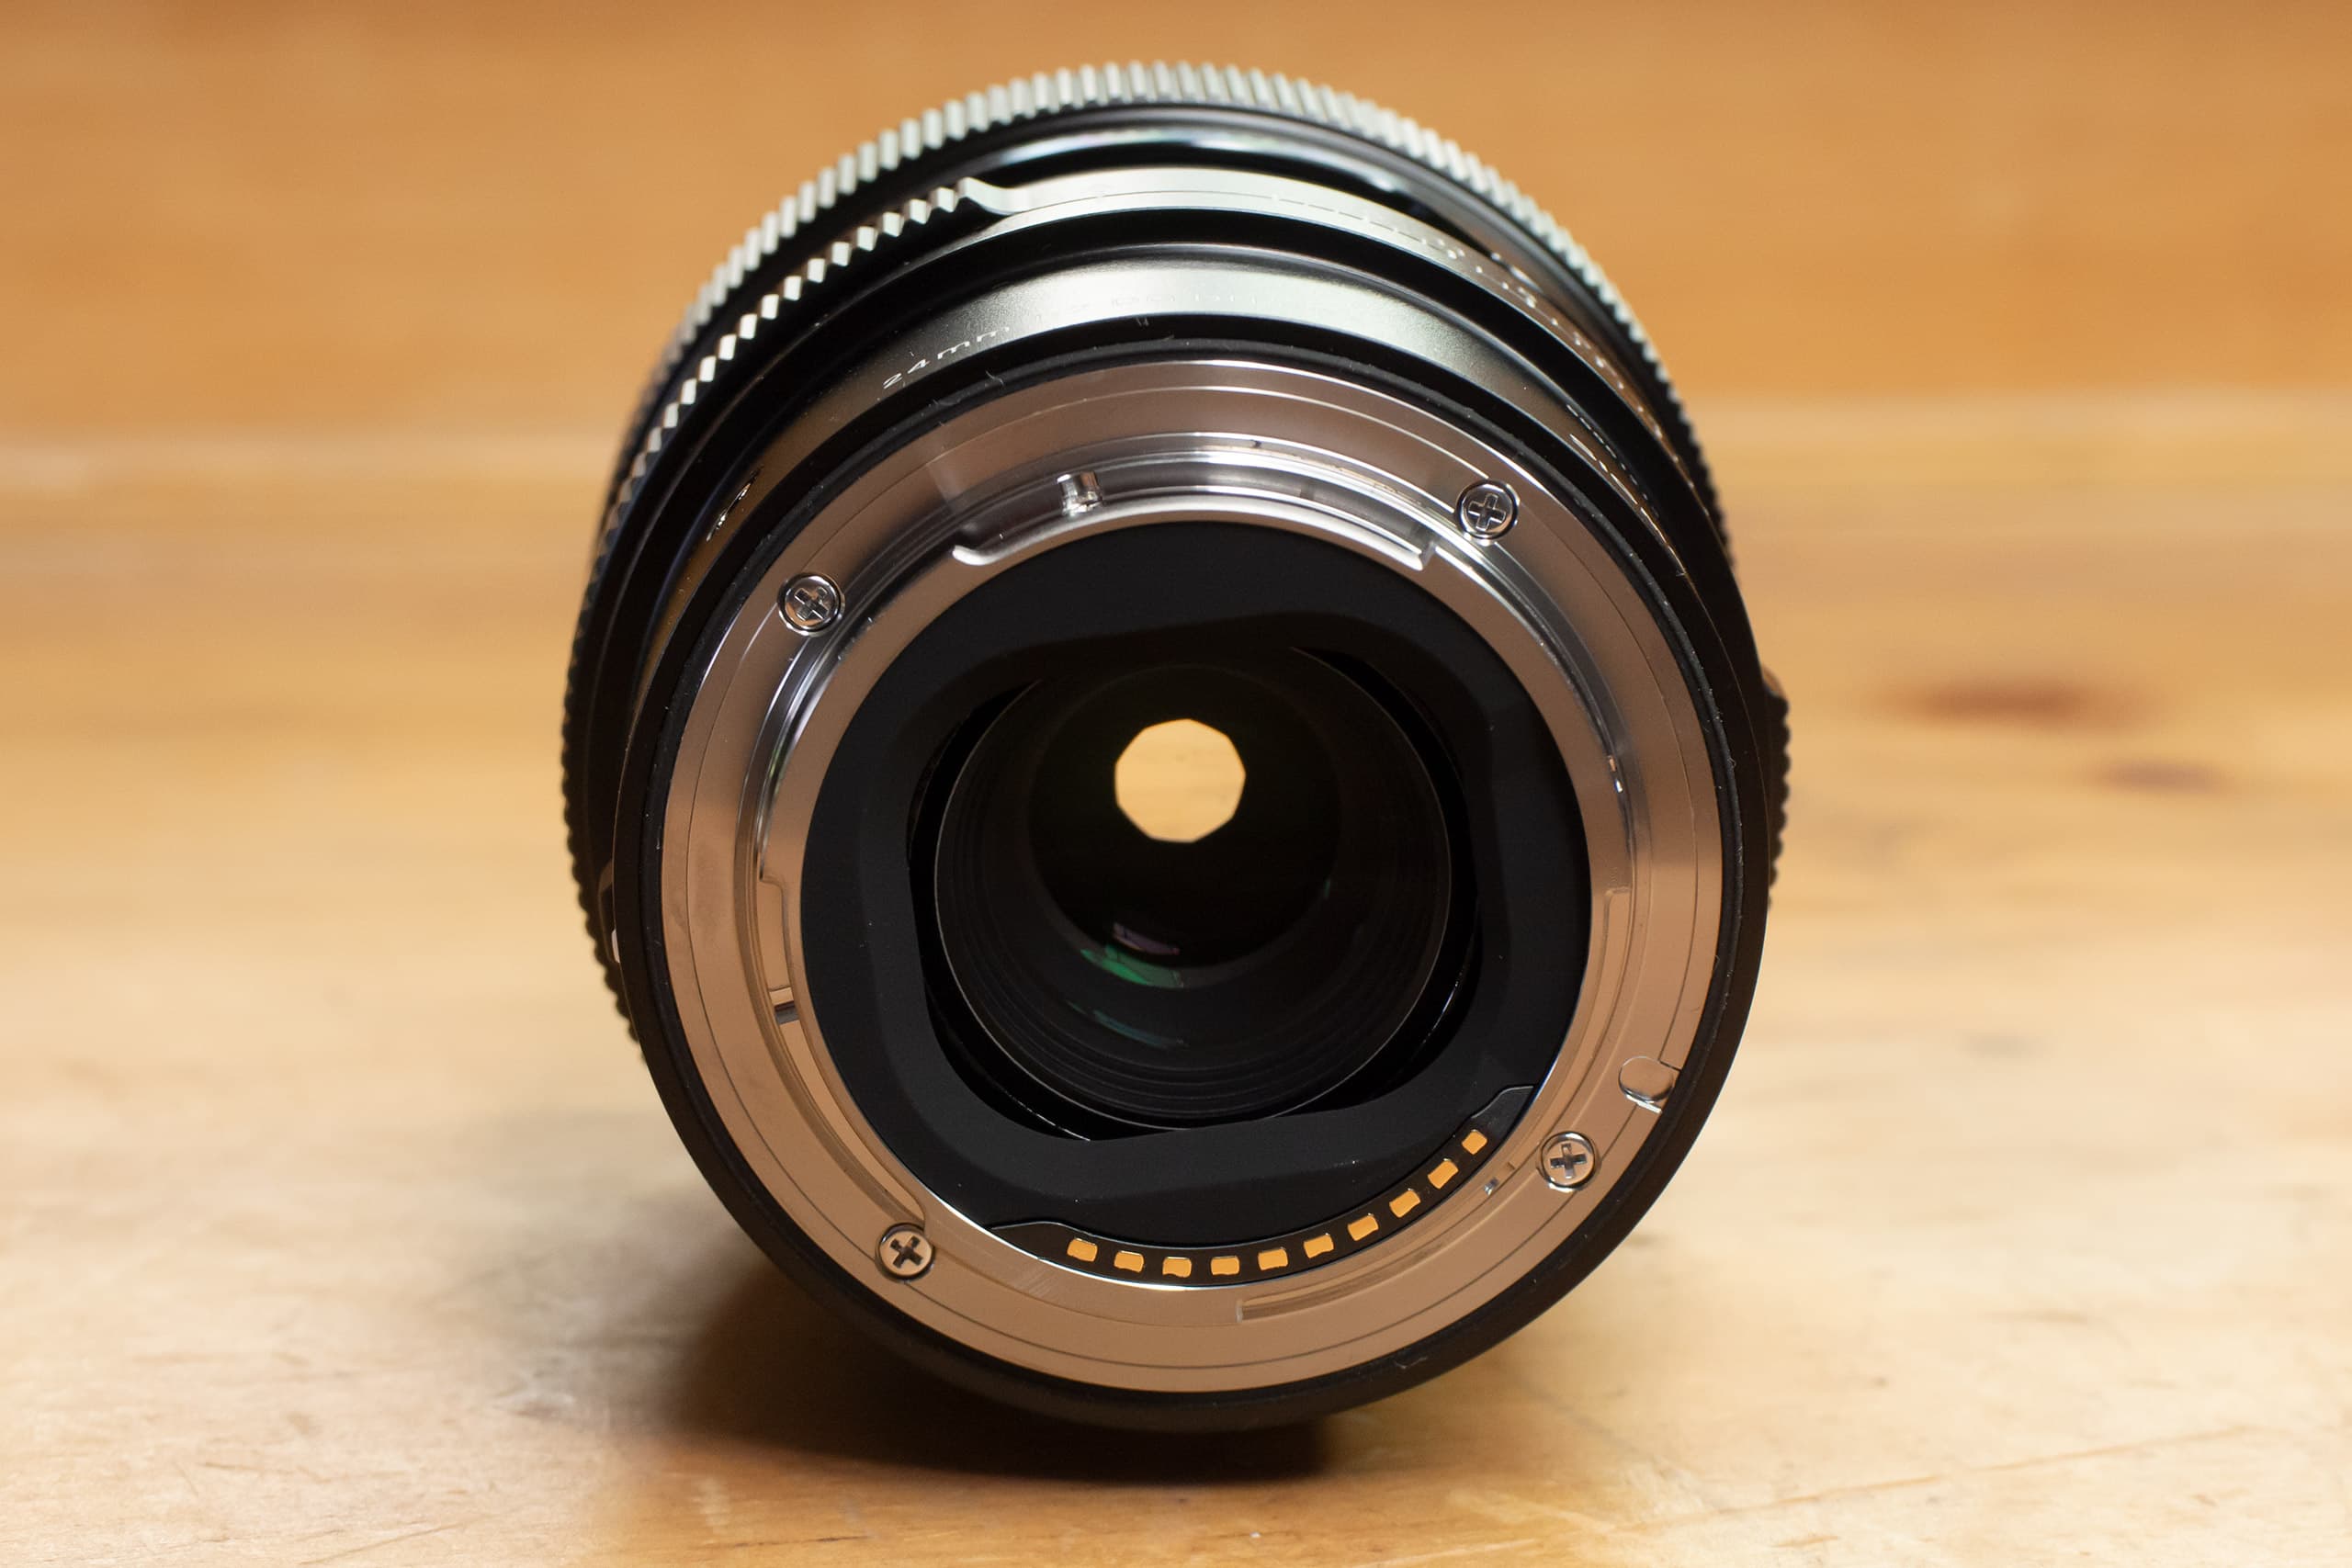 Sigma 24mm f2 DG DN rear view through the lens